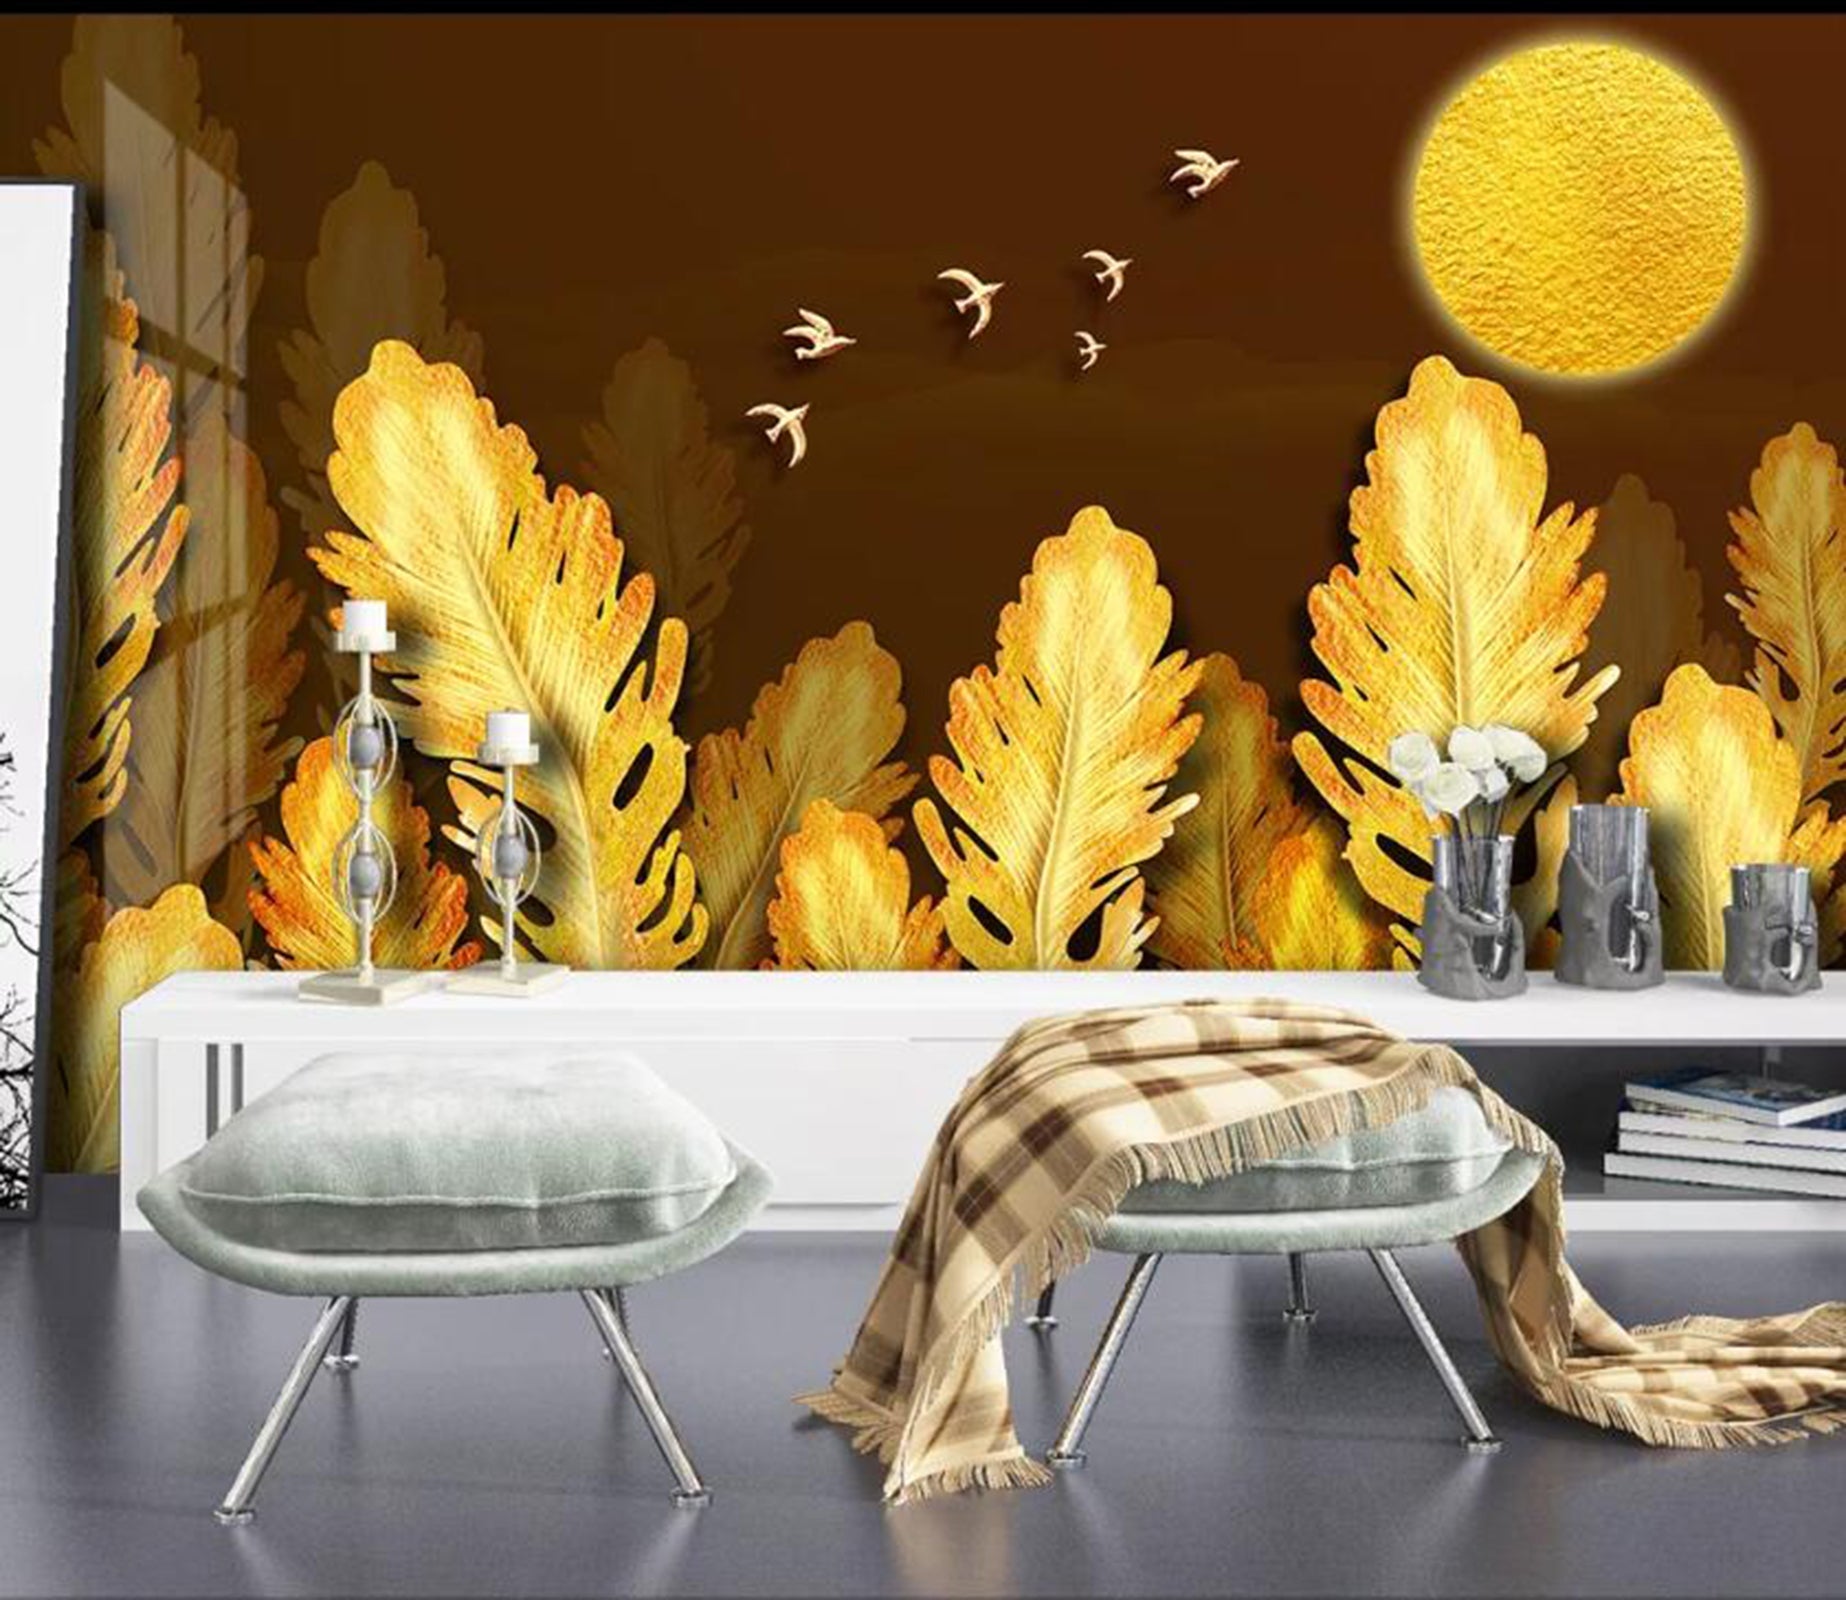 3D Golden Leaves WC47 Wall Murals